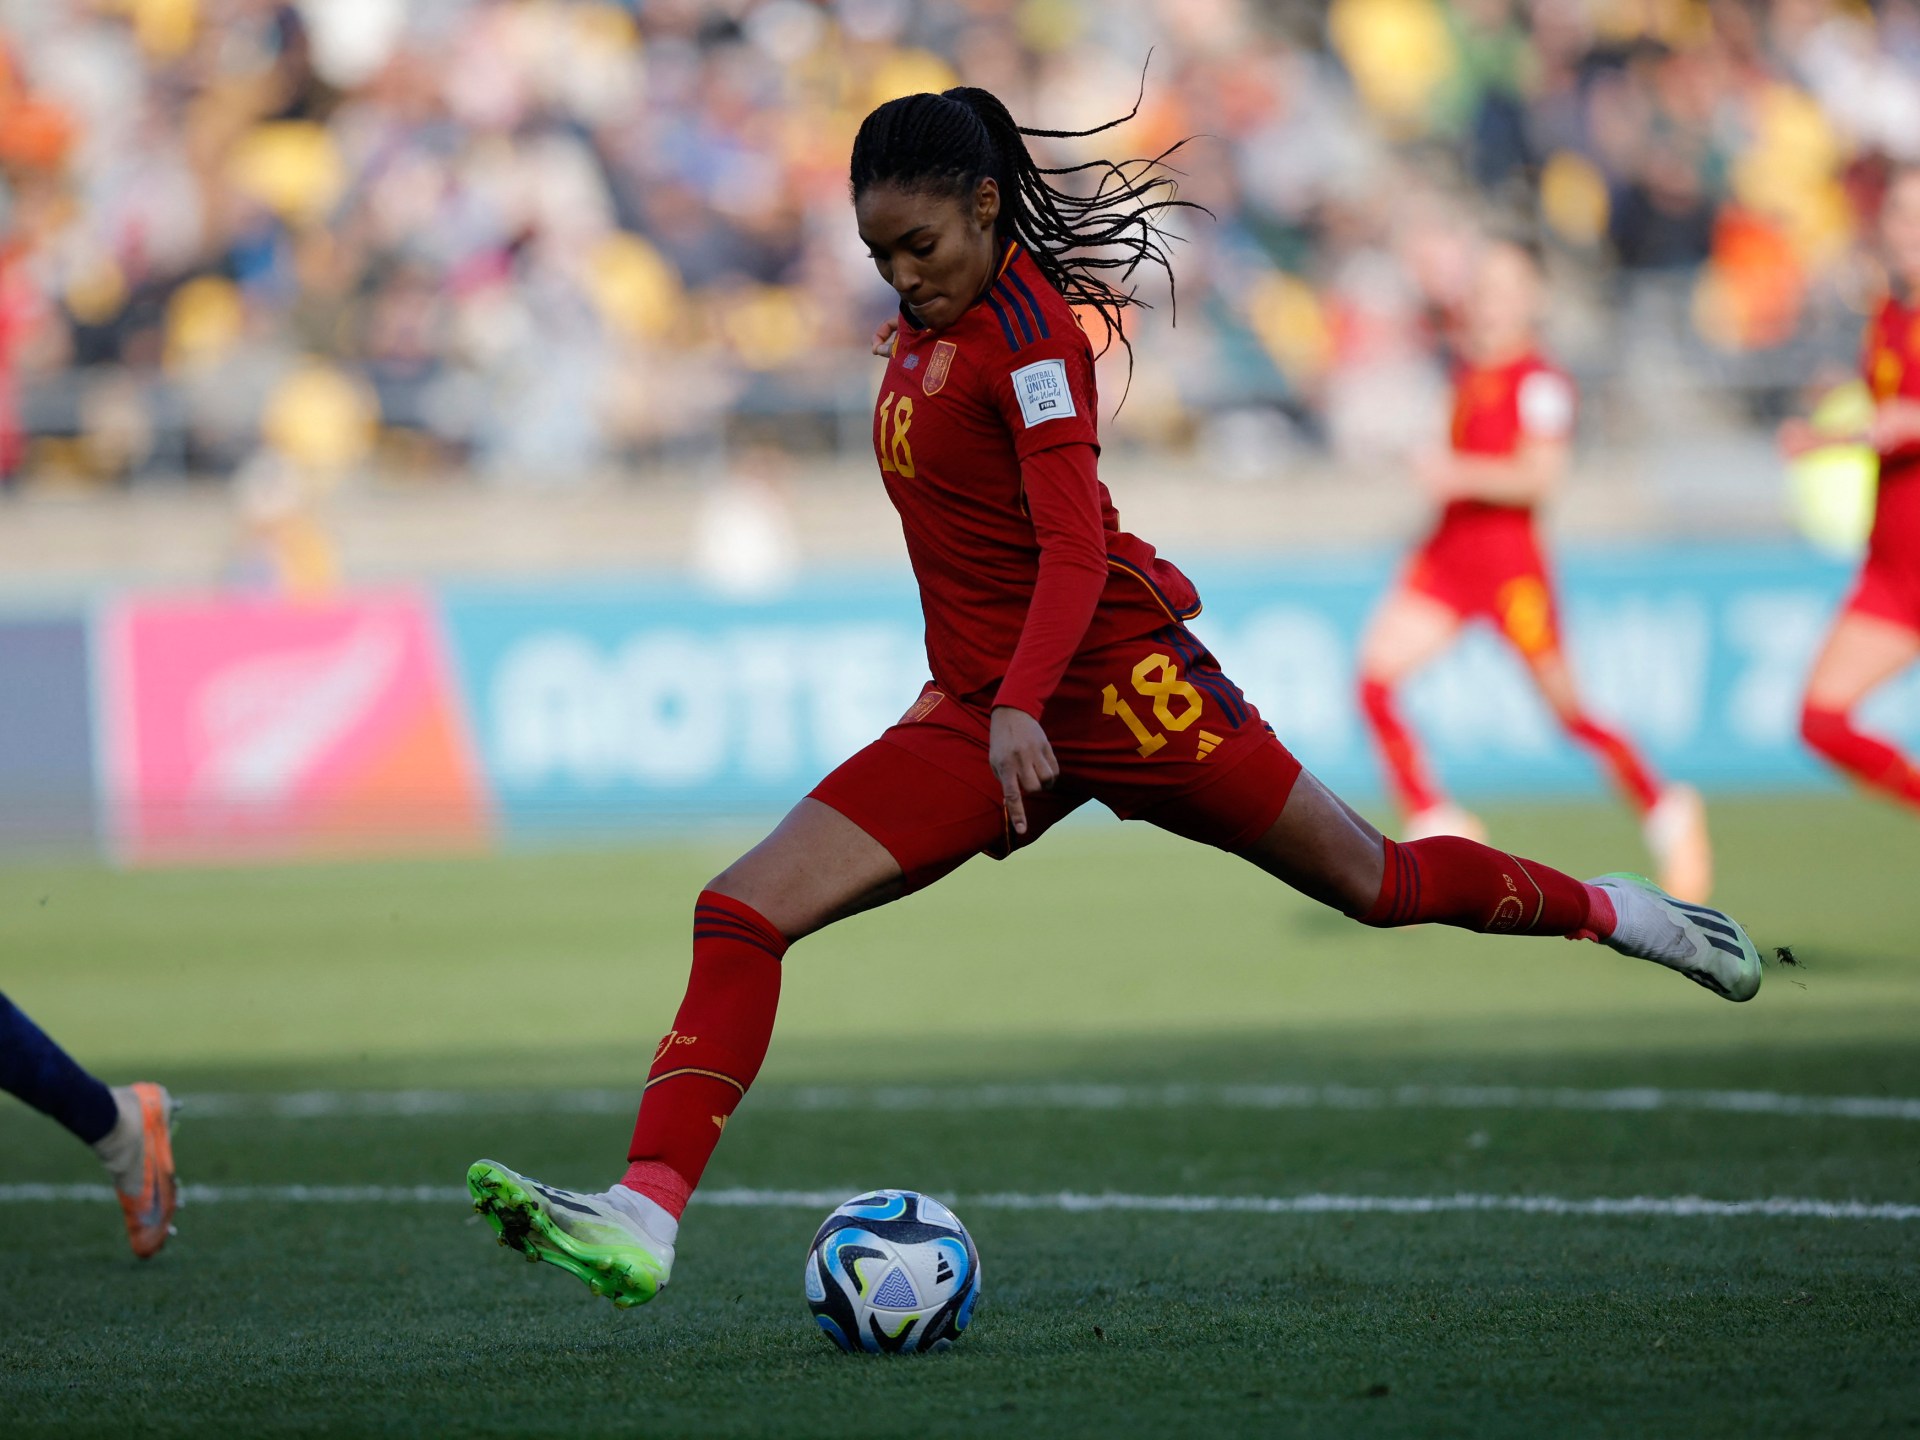 El gol de Parallelo en la prórroga mete a España en semifinales del Mundial |  Noticias de la Copa Mundial Femenina